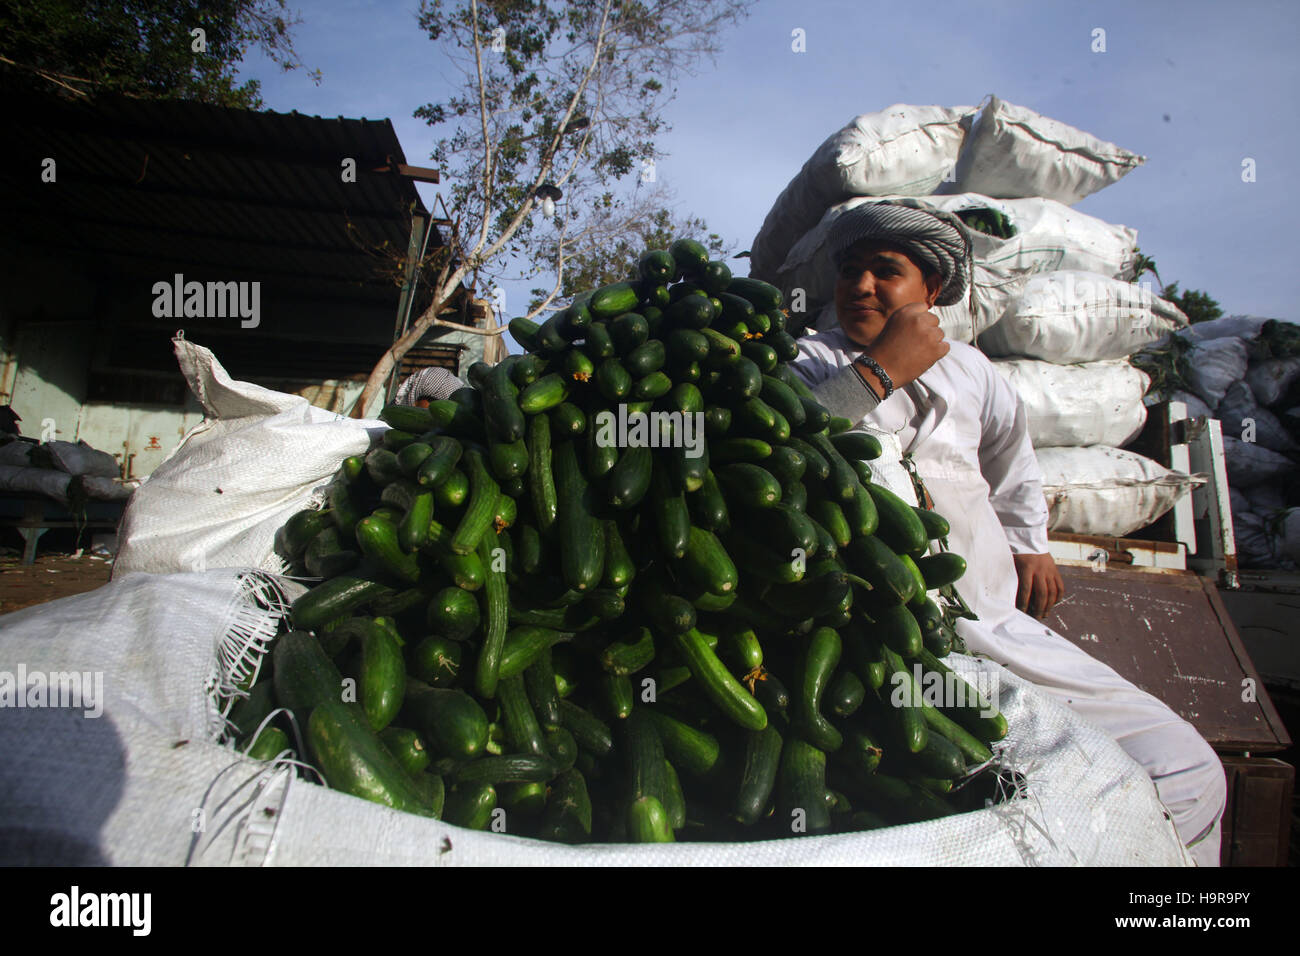 (161124) -- EL CAIRO, 24 de noviembre, 2016 (Xinhua) -- un vendedor espera a los clientes en el mercado Obour en El Cairo, capital de Egipto, el 19 de noviembre del 2016. Situado en las afueras al norte de El Cairo, Obour mayorista de frutas y hortalizas del mercado fue una vez el más transitado depot en Egipto, hasta que la recesión económica comenzó a golpear cada rincón de ella. (Xinhua/Ahmed Gomaa) Foto de stock